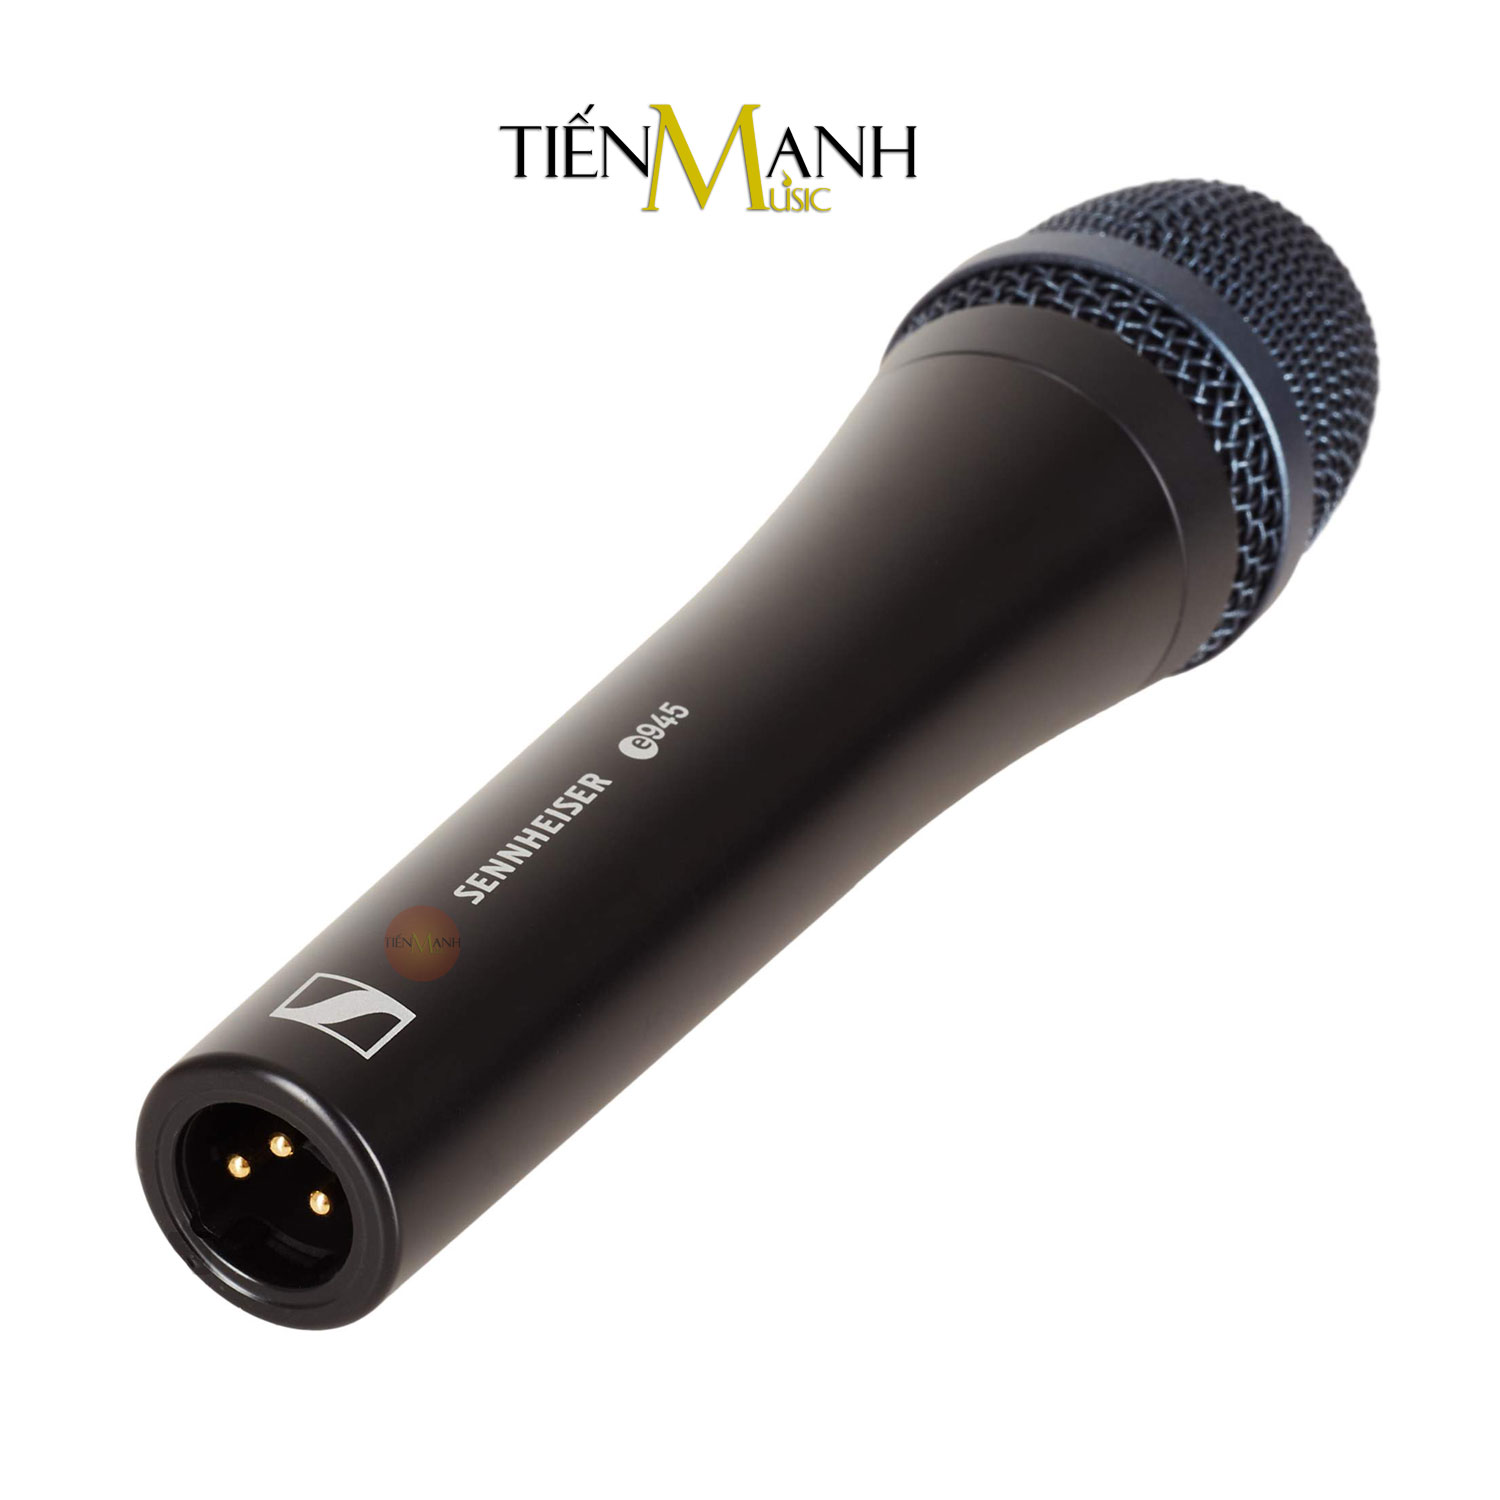 Micro Cầm Tay Sennheiser E945 - Mic Dynamic Vocal Microphone E 945 Hàng Chính Hãng - Kèm Móng Gẩy DreamMaker